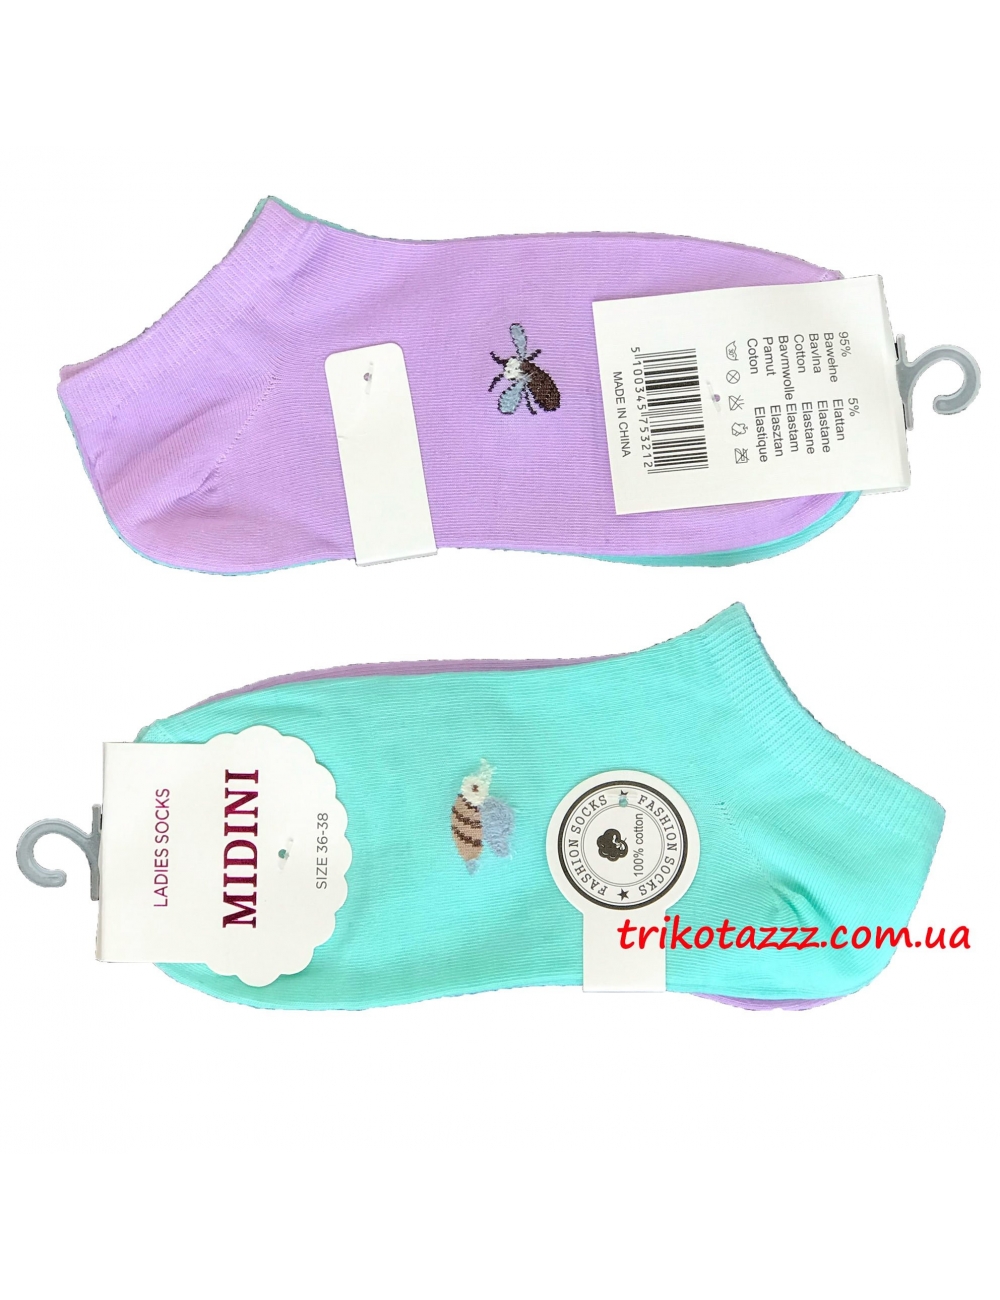 Набор носков для девочек (подростков) 2 пары Midini бирюзовые+лиловые